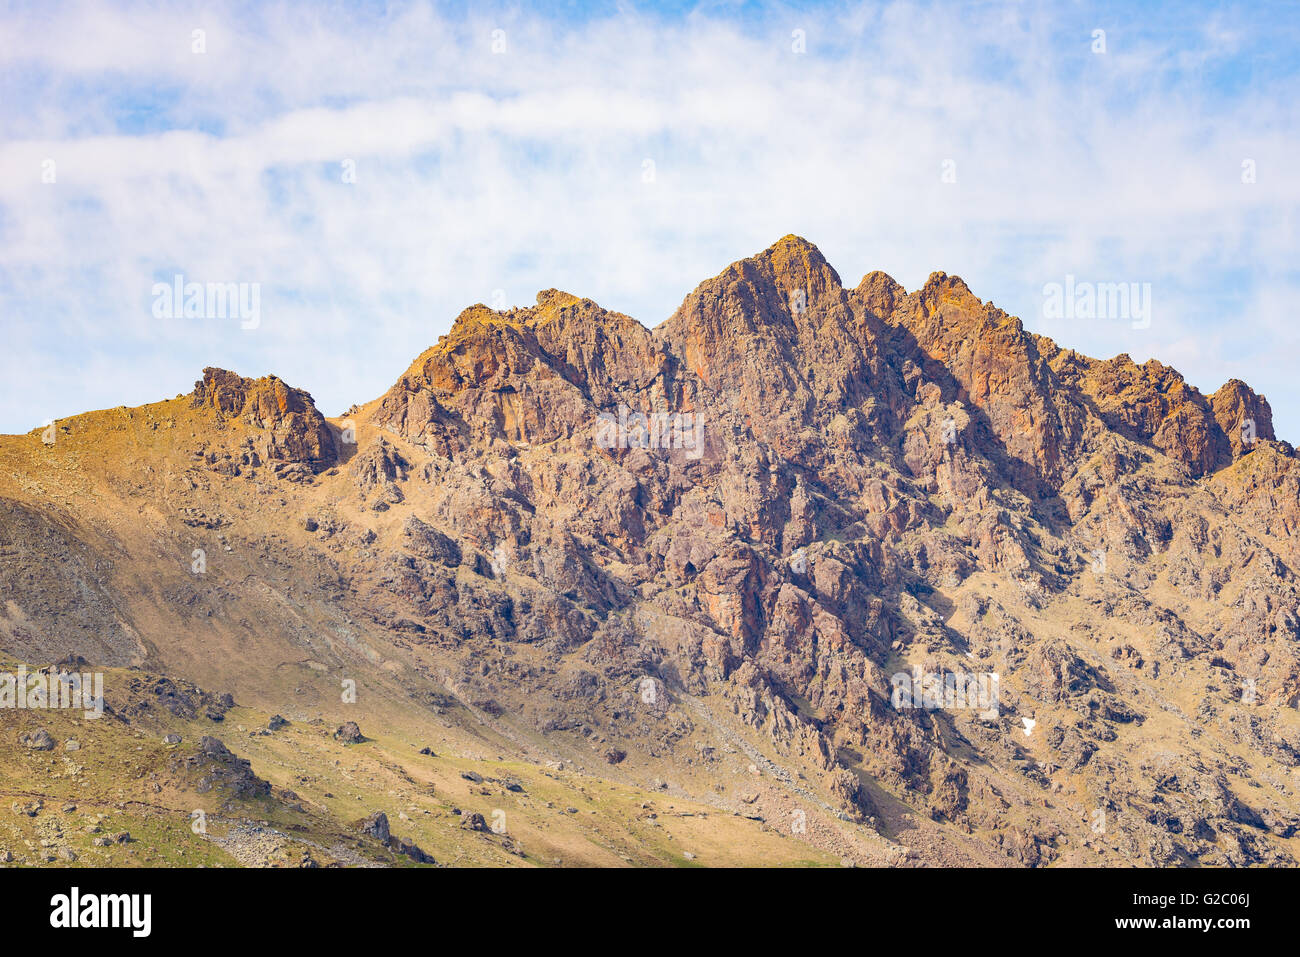 Teleobiettivo con vista dettagliata del Rocky Mountain peak e frastagliata cresta. Terreni estremi del paesaggio ad alta altitudine sulle Alpi, Italia. Foto Stock